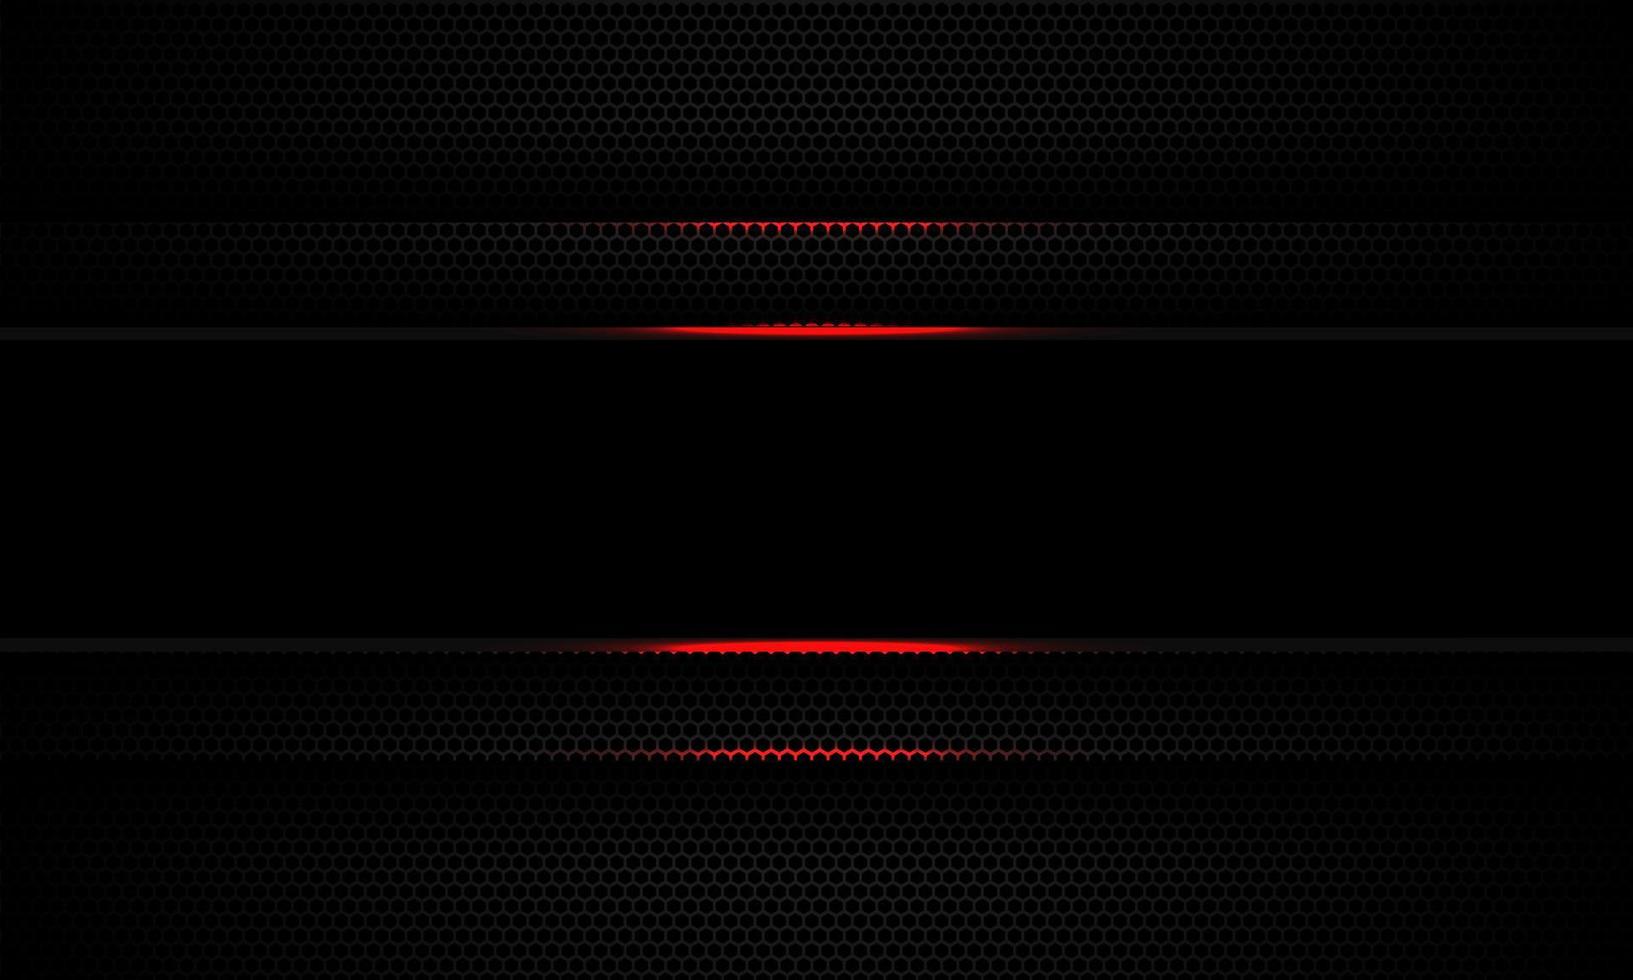 astratto linea nera banner luce rossa ombra su scuro maglia esagonale banner design moderna tecnologia futuristica vettore di sfondo